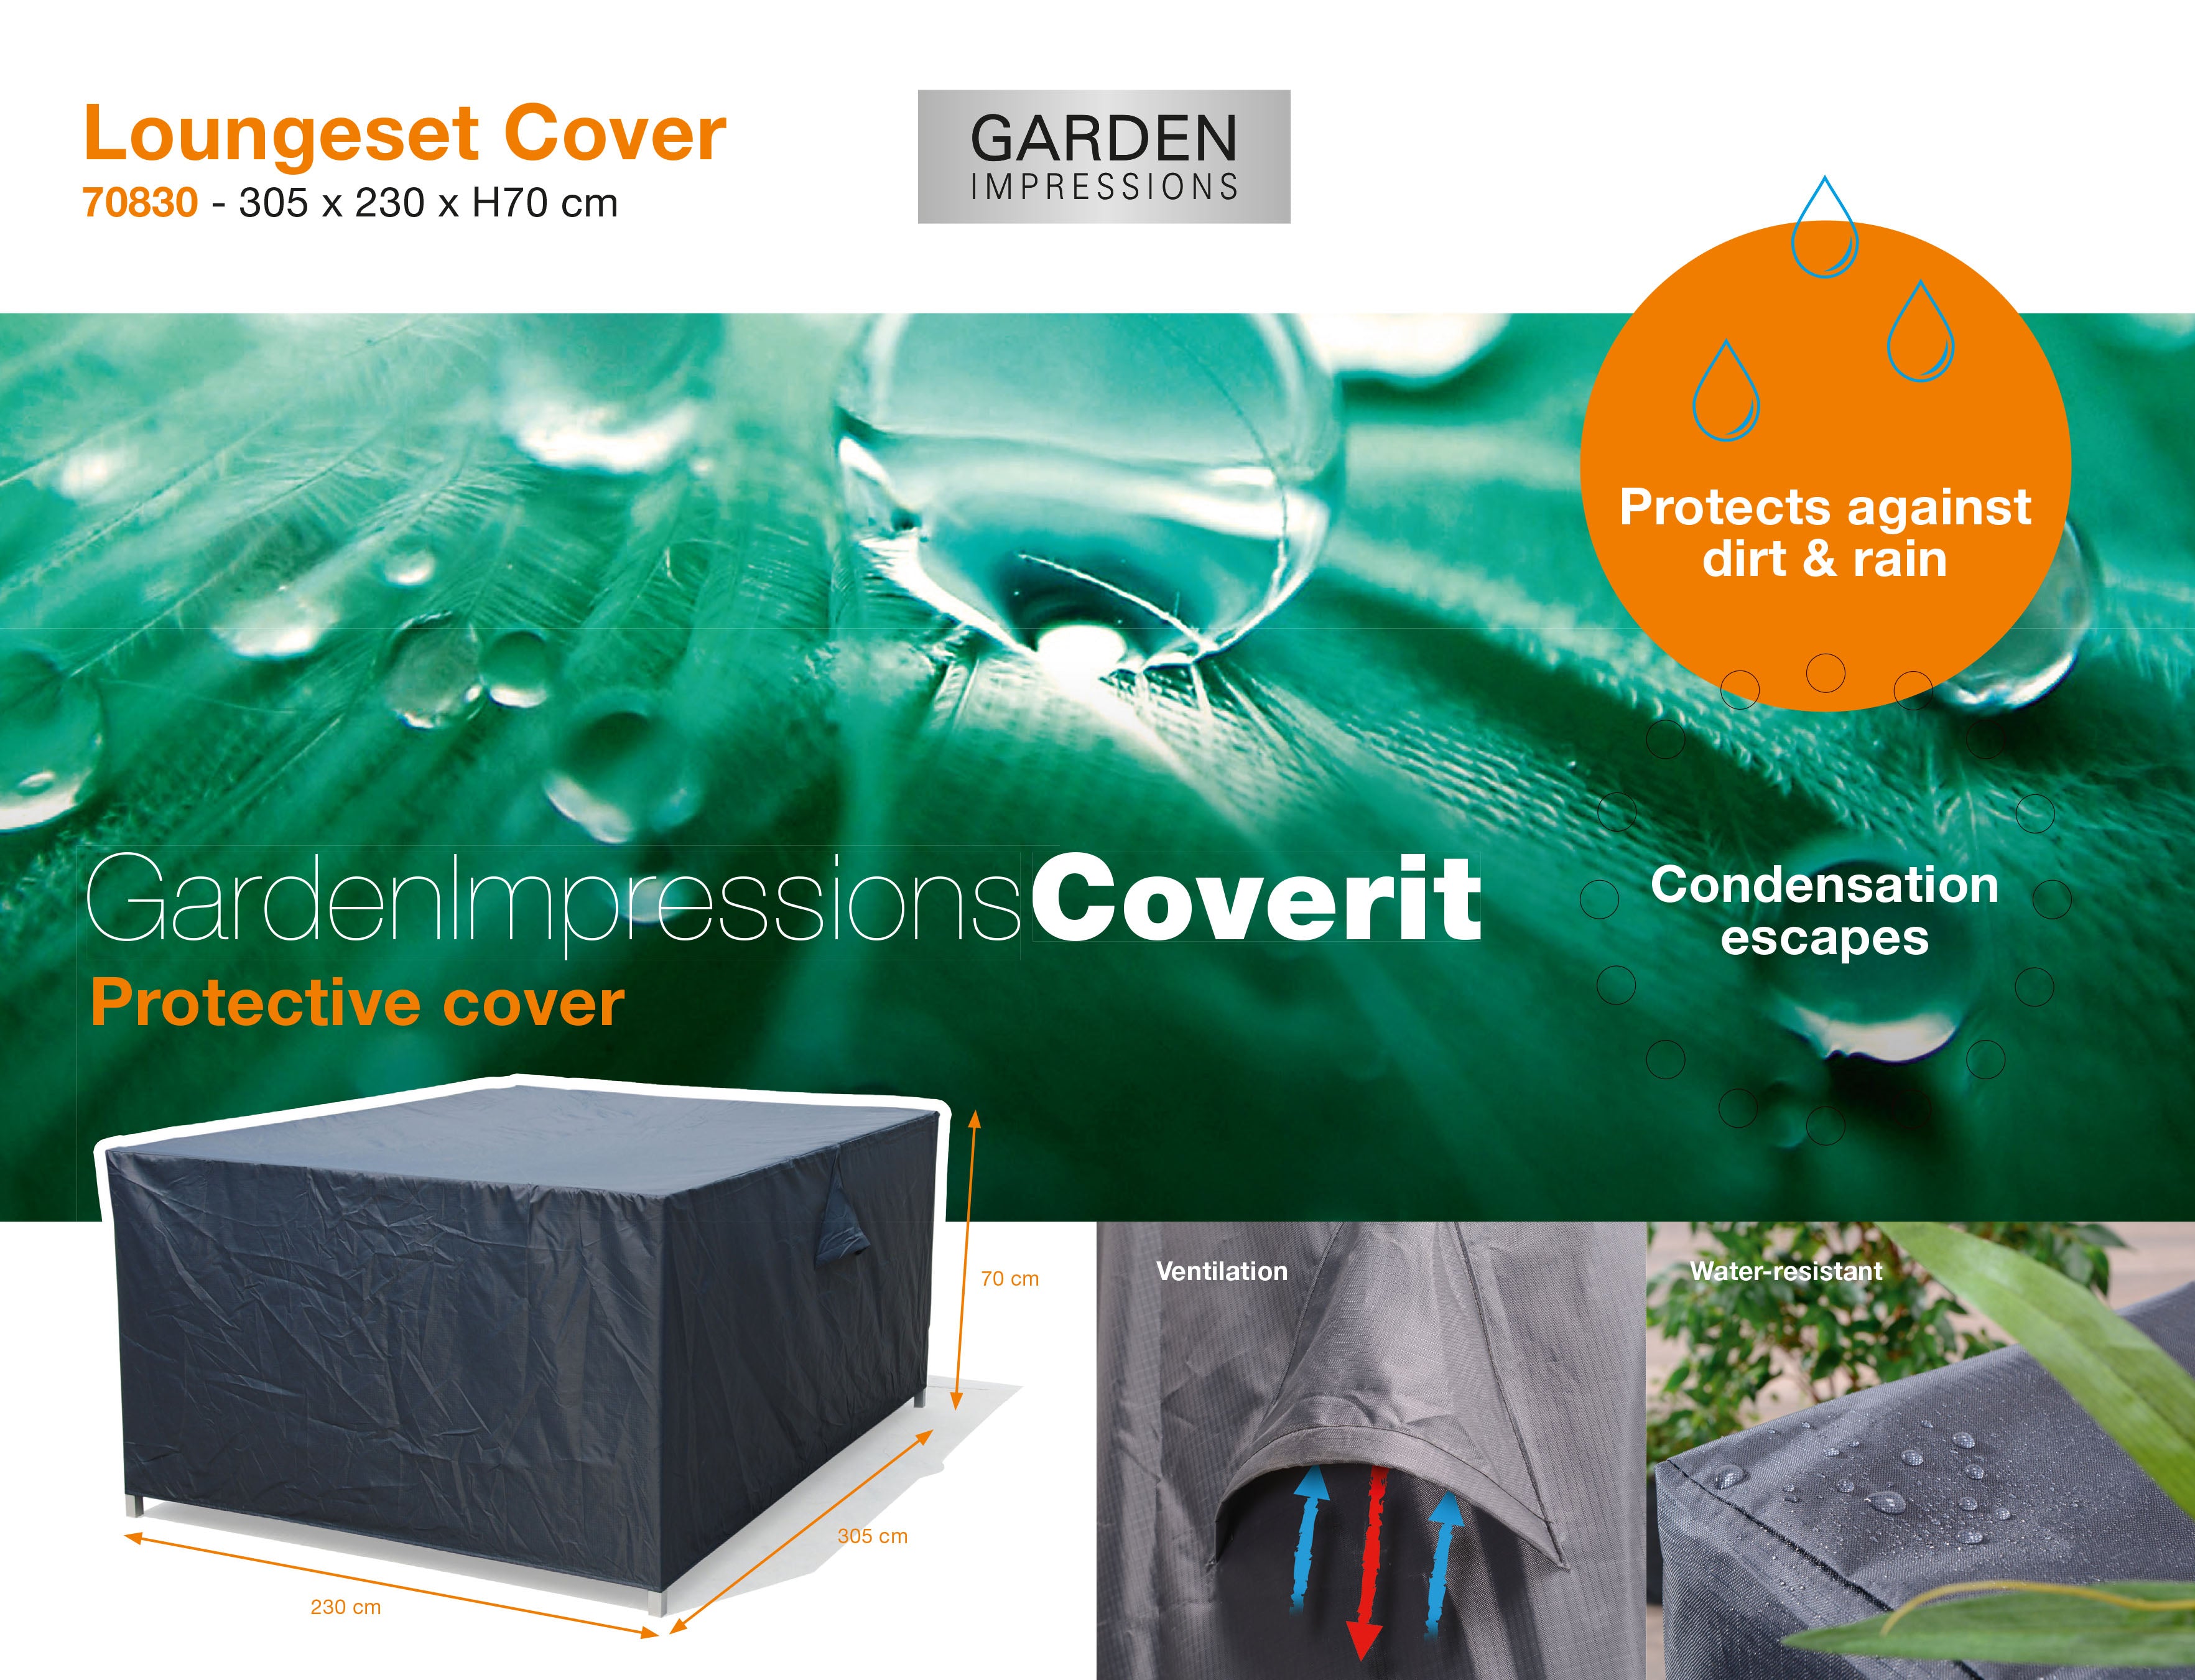 Coverit Lounge Set Cover 305cm x 230cm